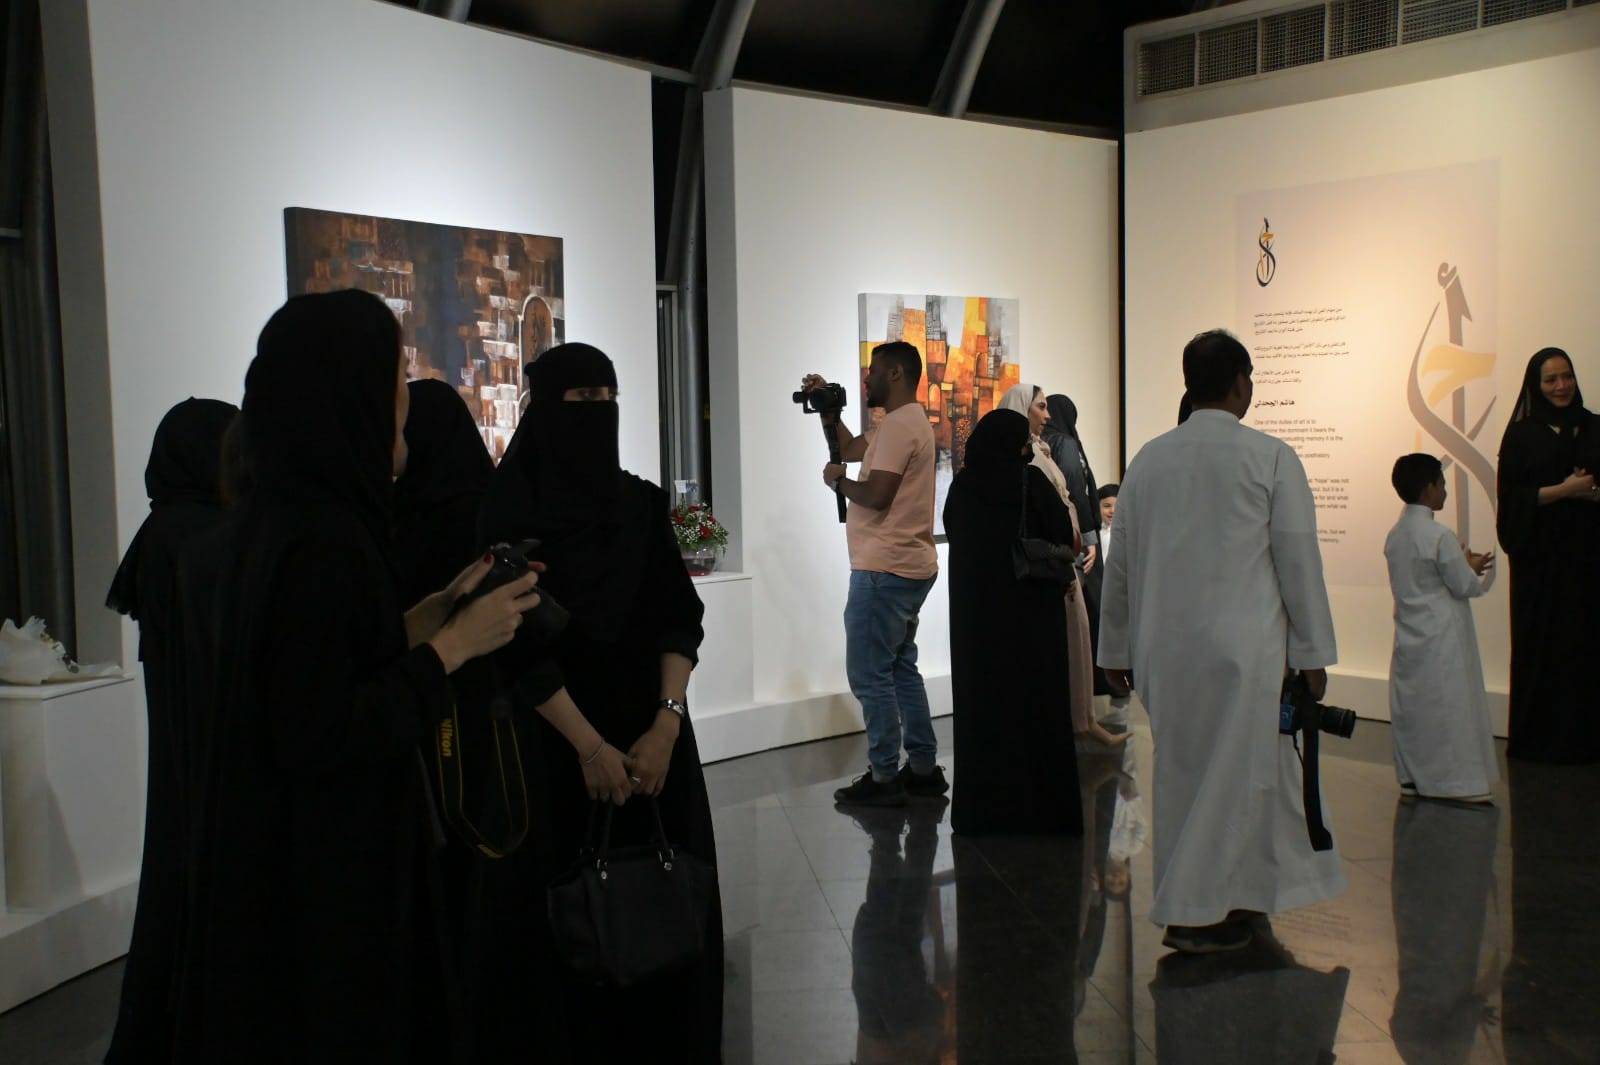  محافظة #جدة تشهد إقامة أول معرض فن تشكيلي بتقنية الـ "NFT" الرقمية